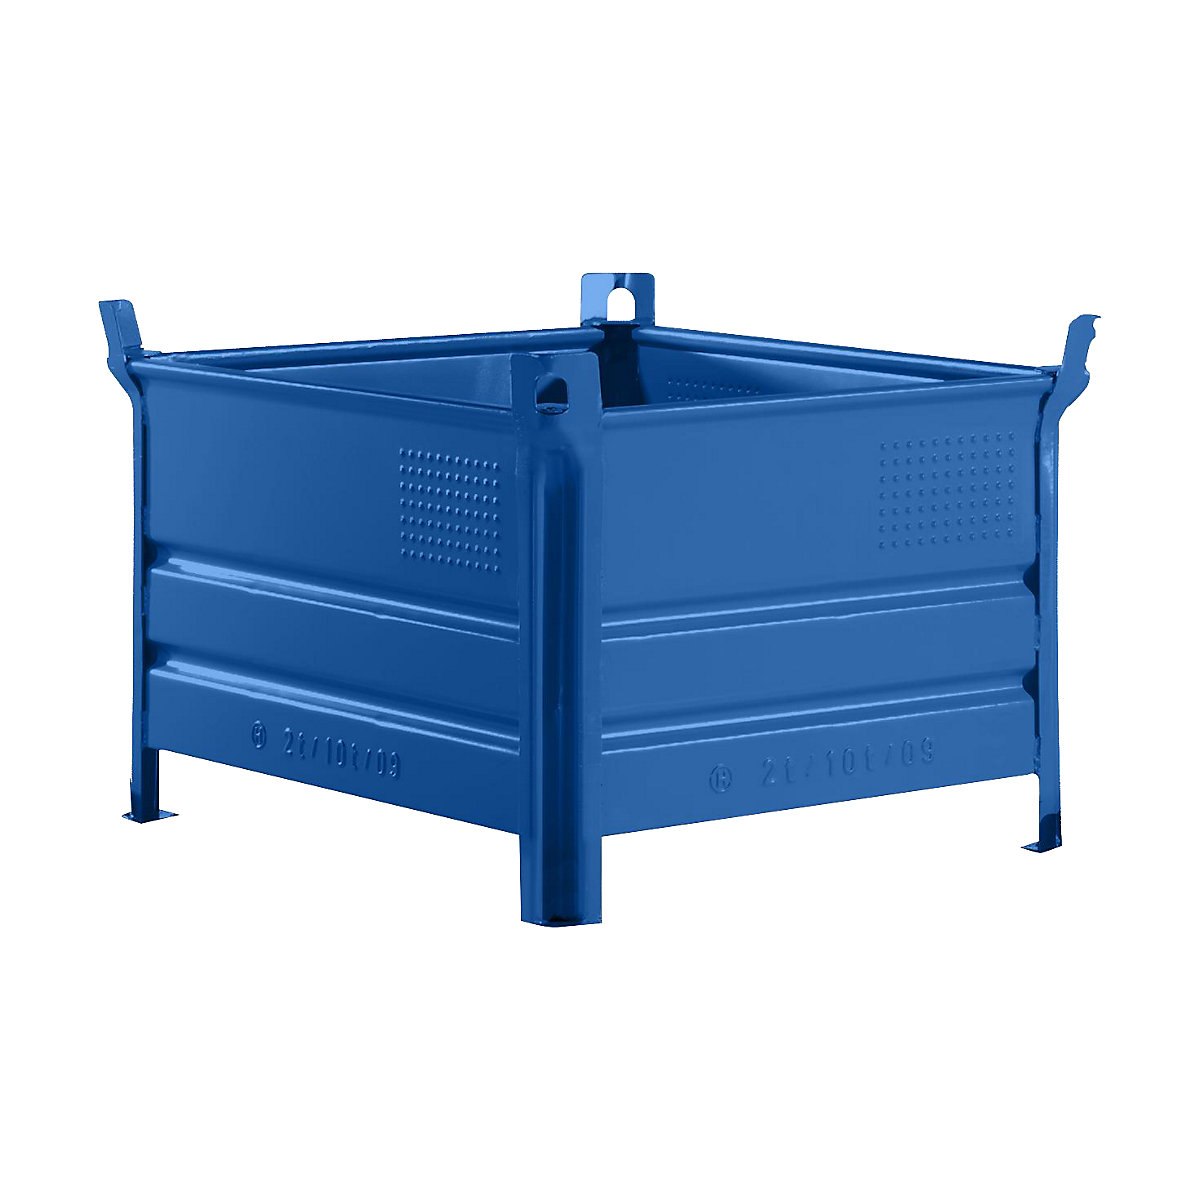 Pojemnik do ustawiania w stos z pełnymi ściankami – Heson, szer. x dł. 800 x 1000 mm, nośność 2000 kg, niebieski, od 1 szt.-6